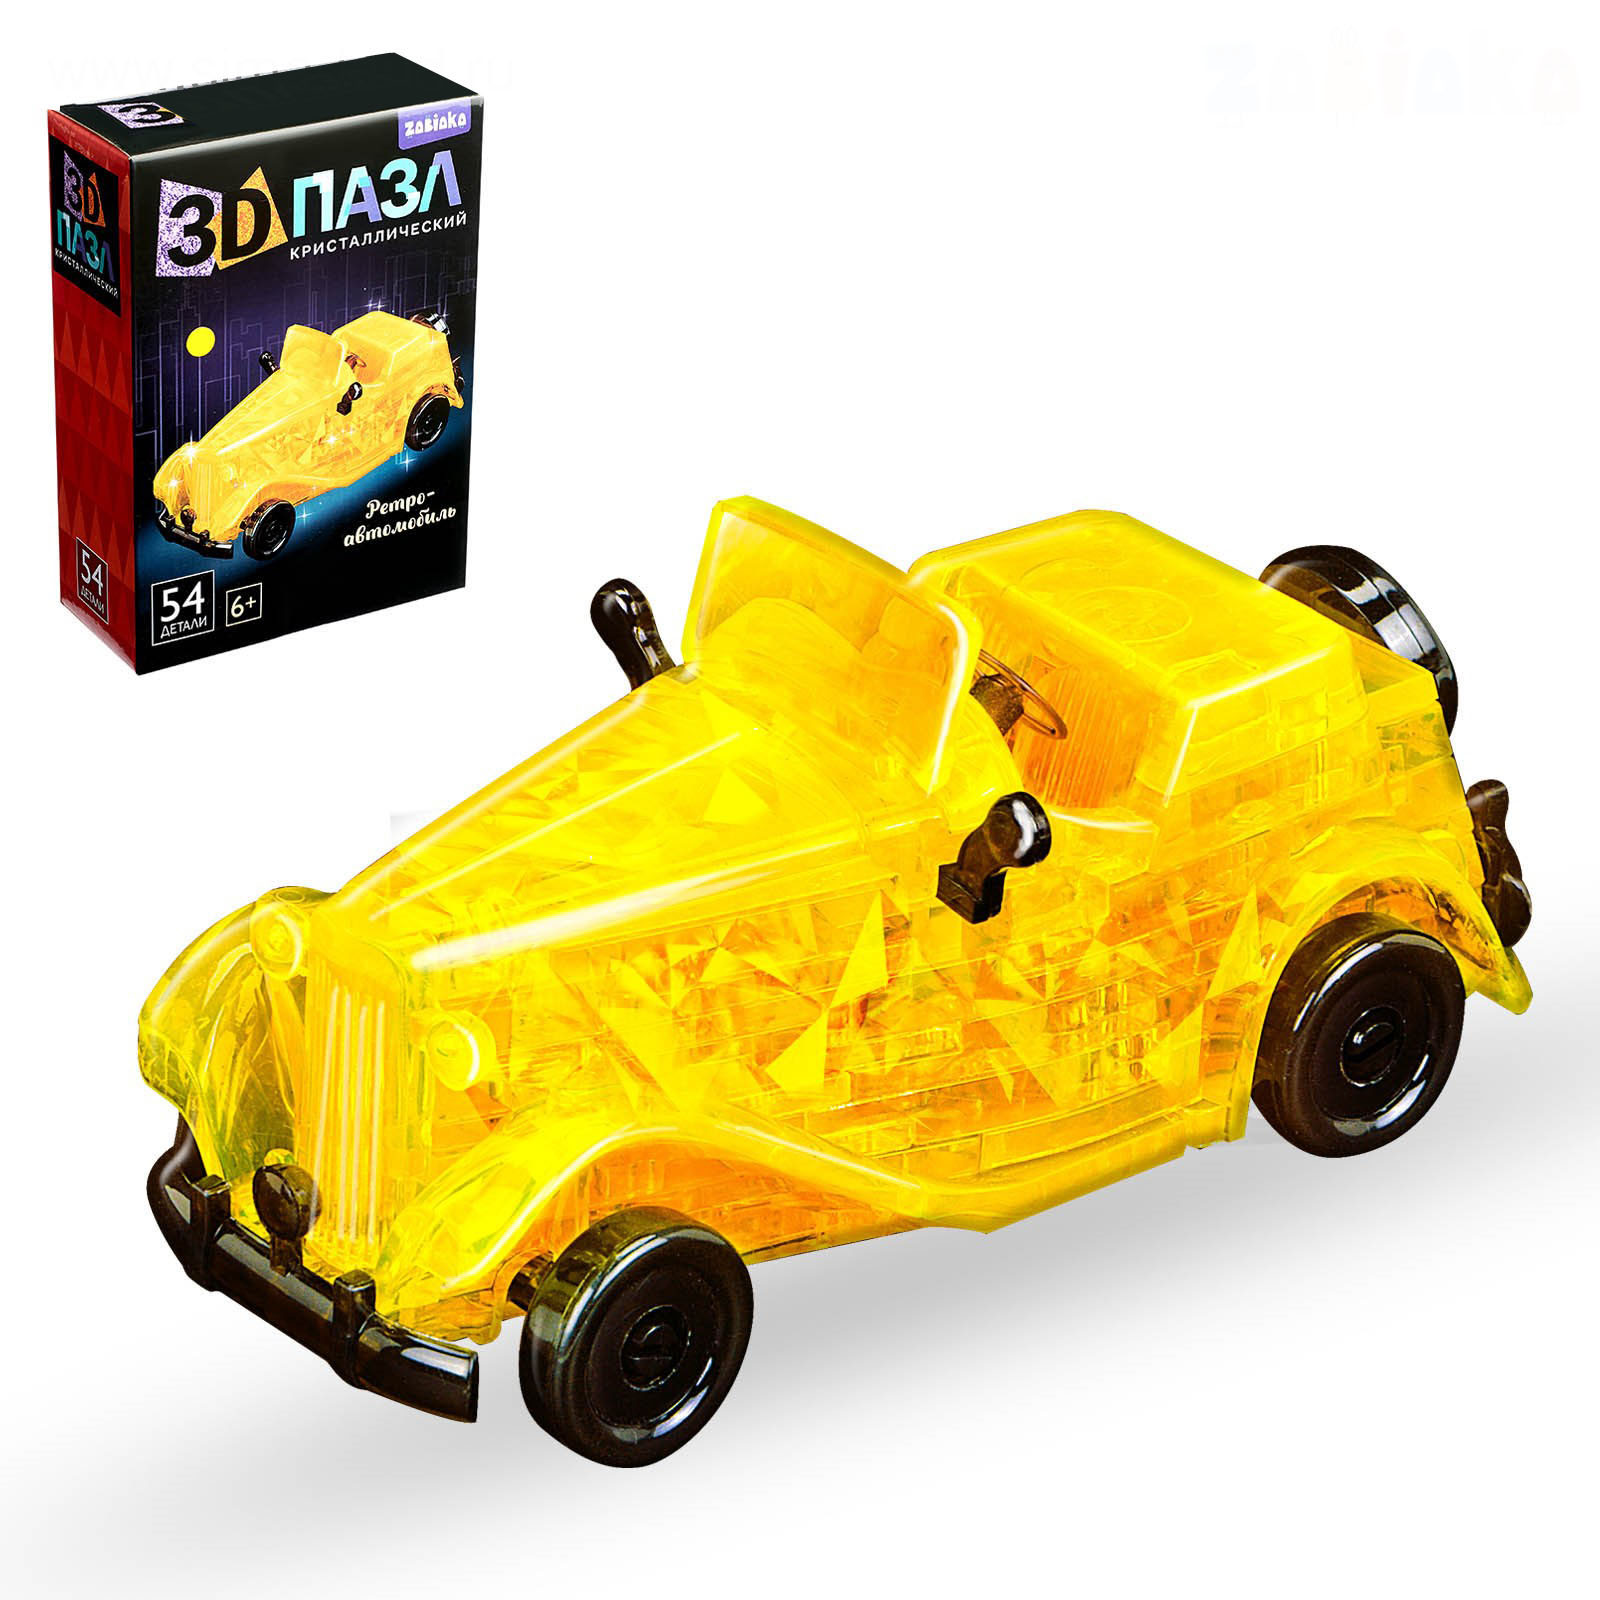 Пазл Забияка 3D кристаллический Ретро-автомобиль, 54 детали в ассортименте 1025225